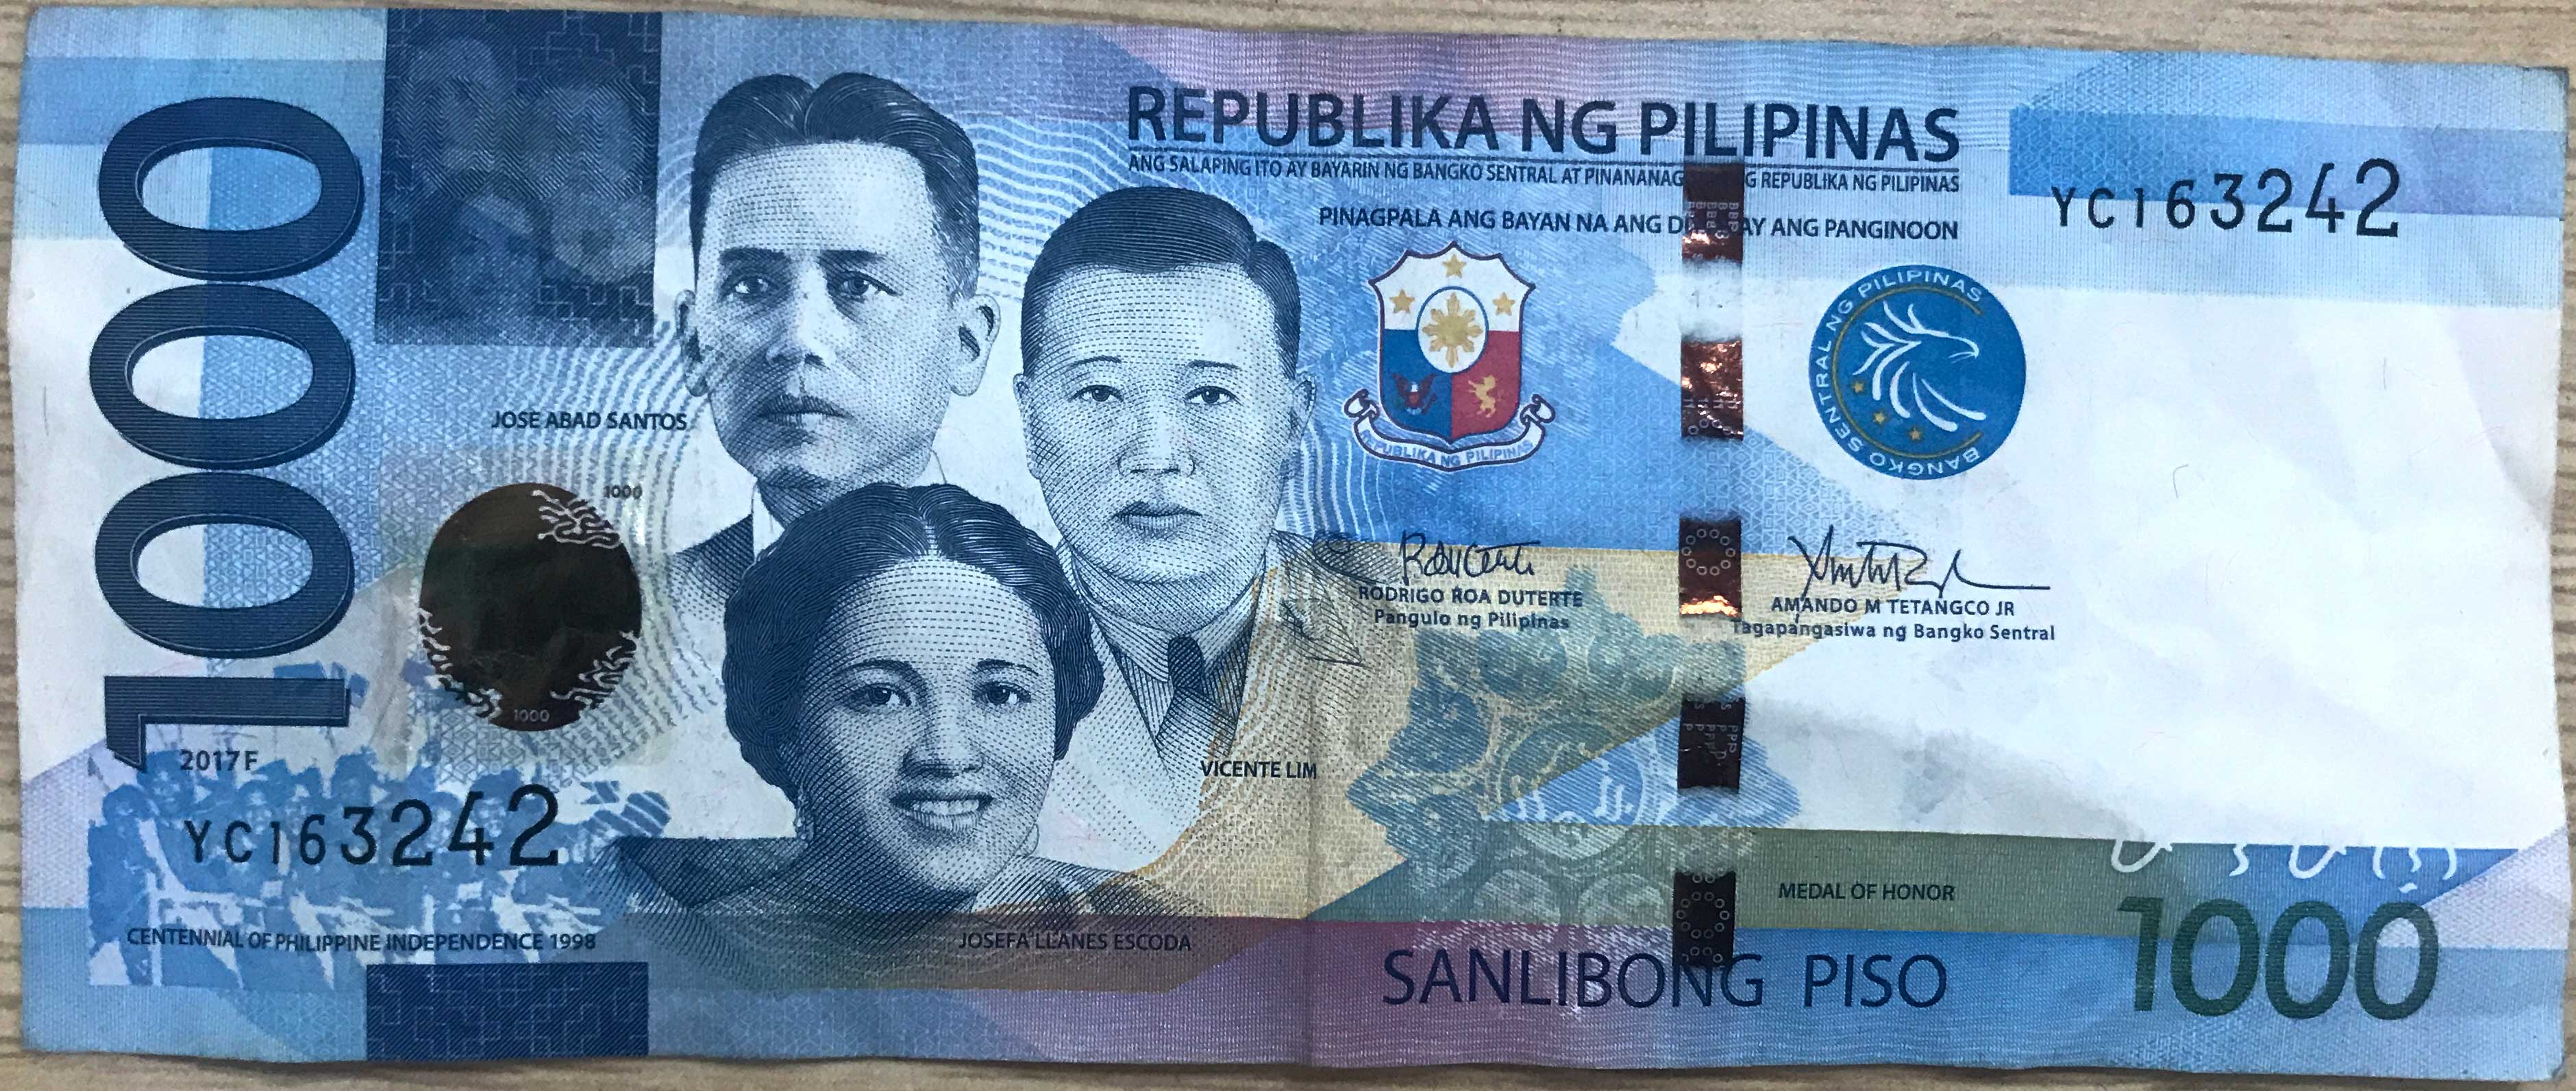 菲律宾货币(比索的介绍以及兑换)